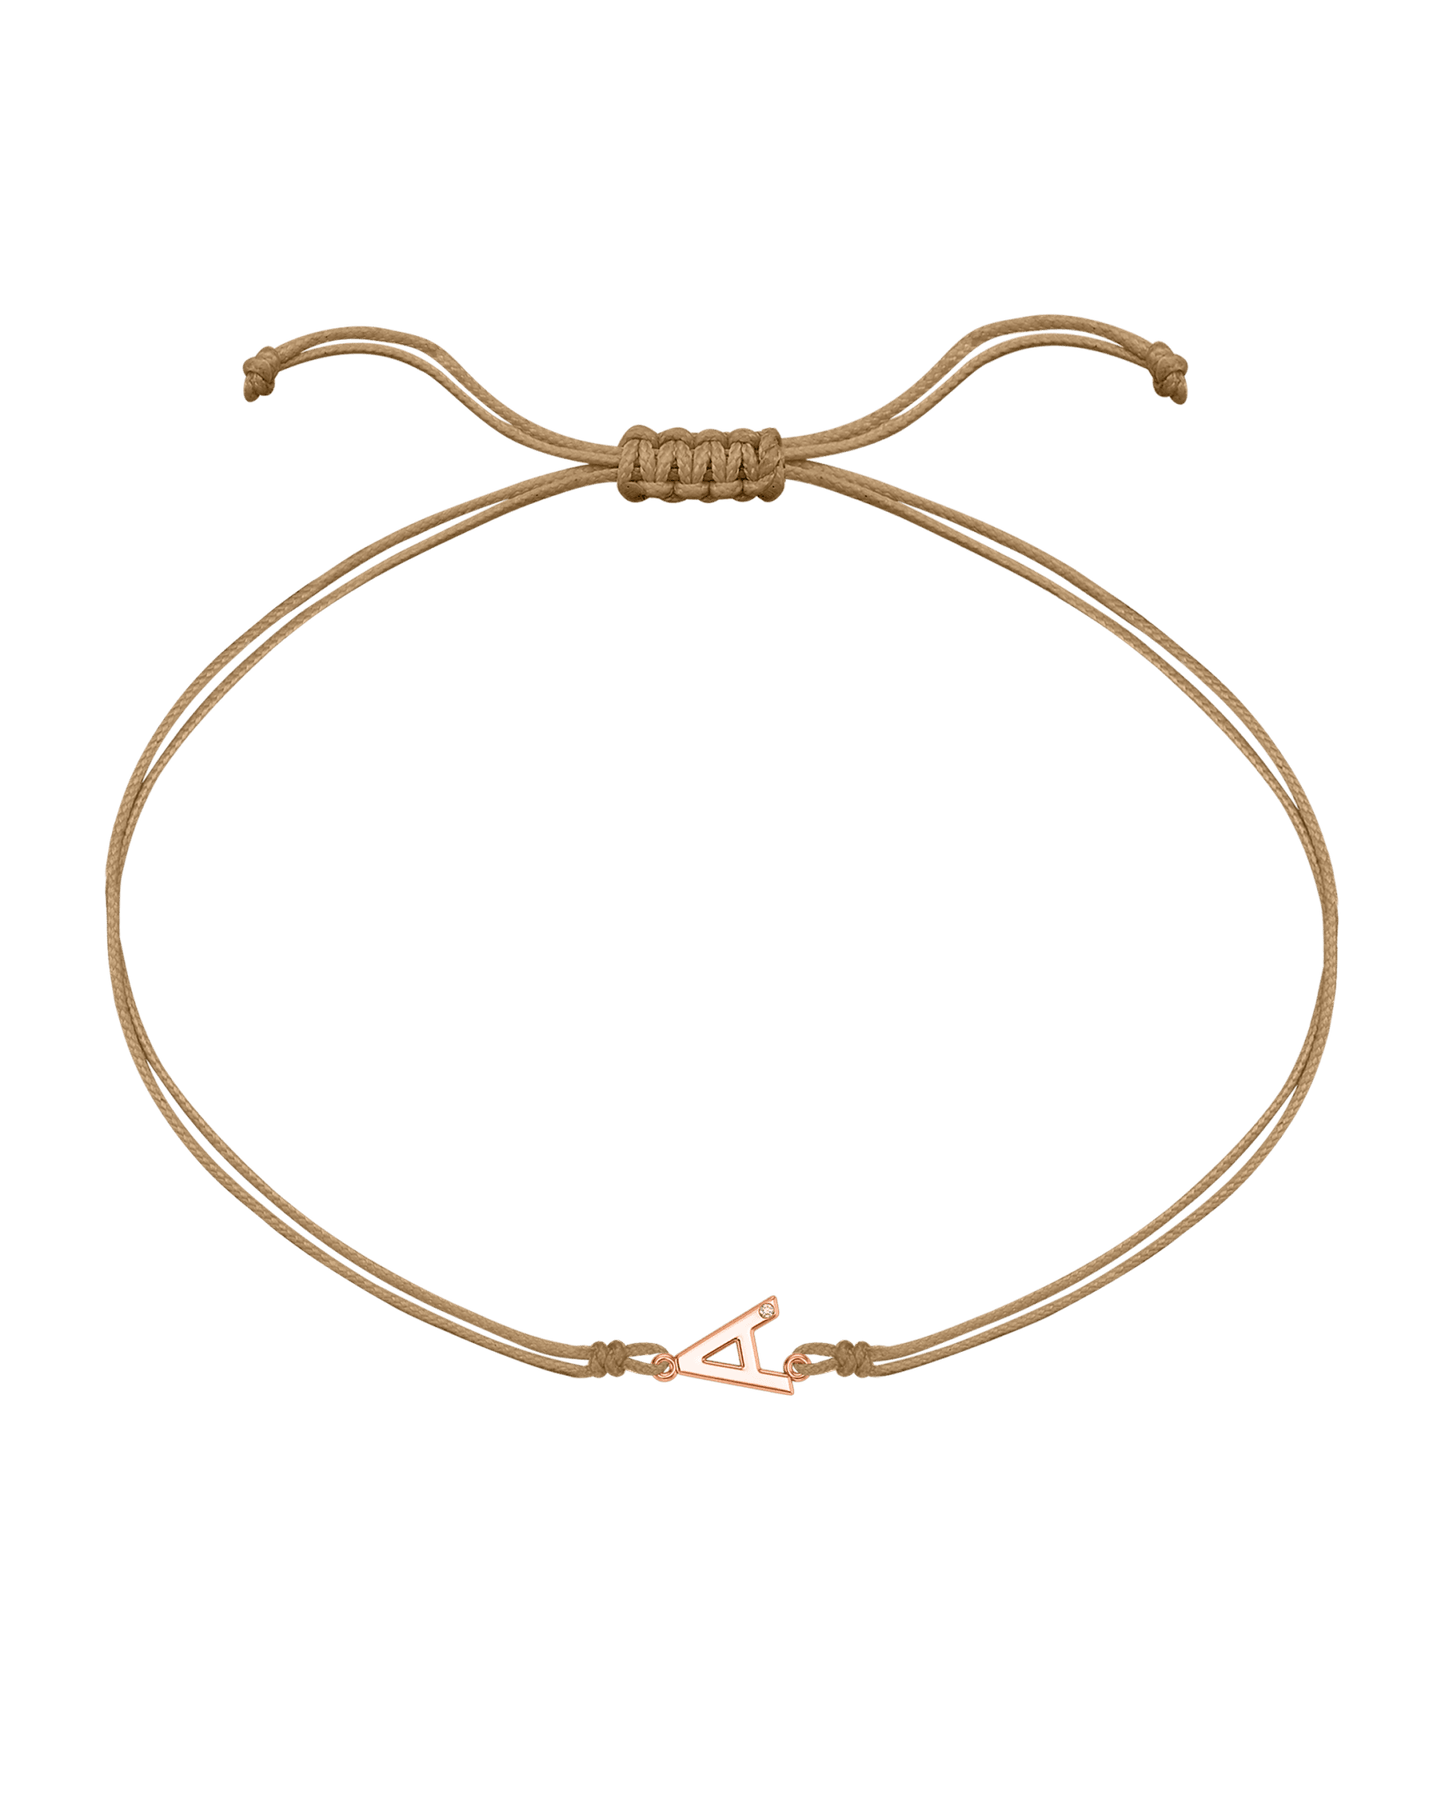 Initial String of Love - 14K Rose Gold Bracelets 14K Solid Gold Camel 